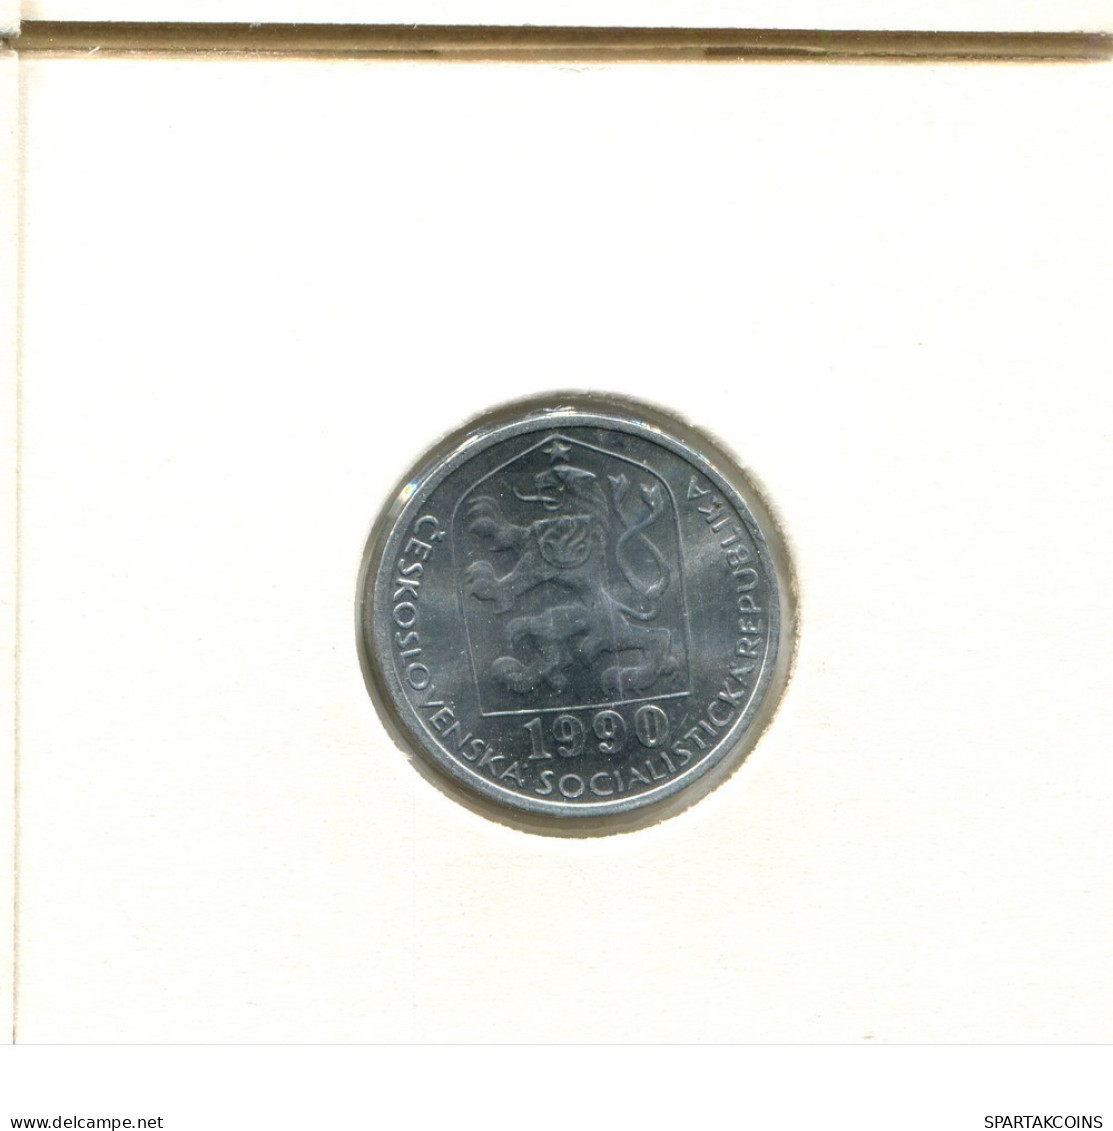 10 HALERU 1990 CHECOSLOVAQUIA CZECHOESLOVAQUIA SLOVAKIA Moneda #AZ936.E.A - Tsjechoslowakije